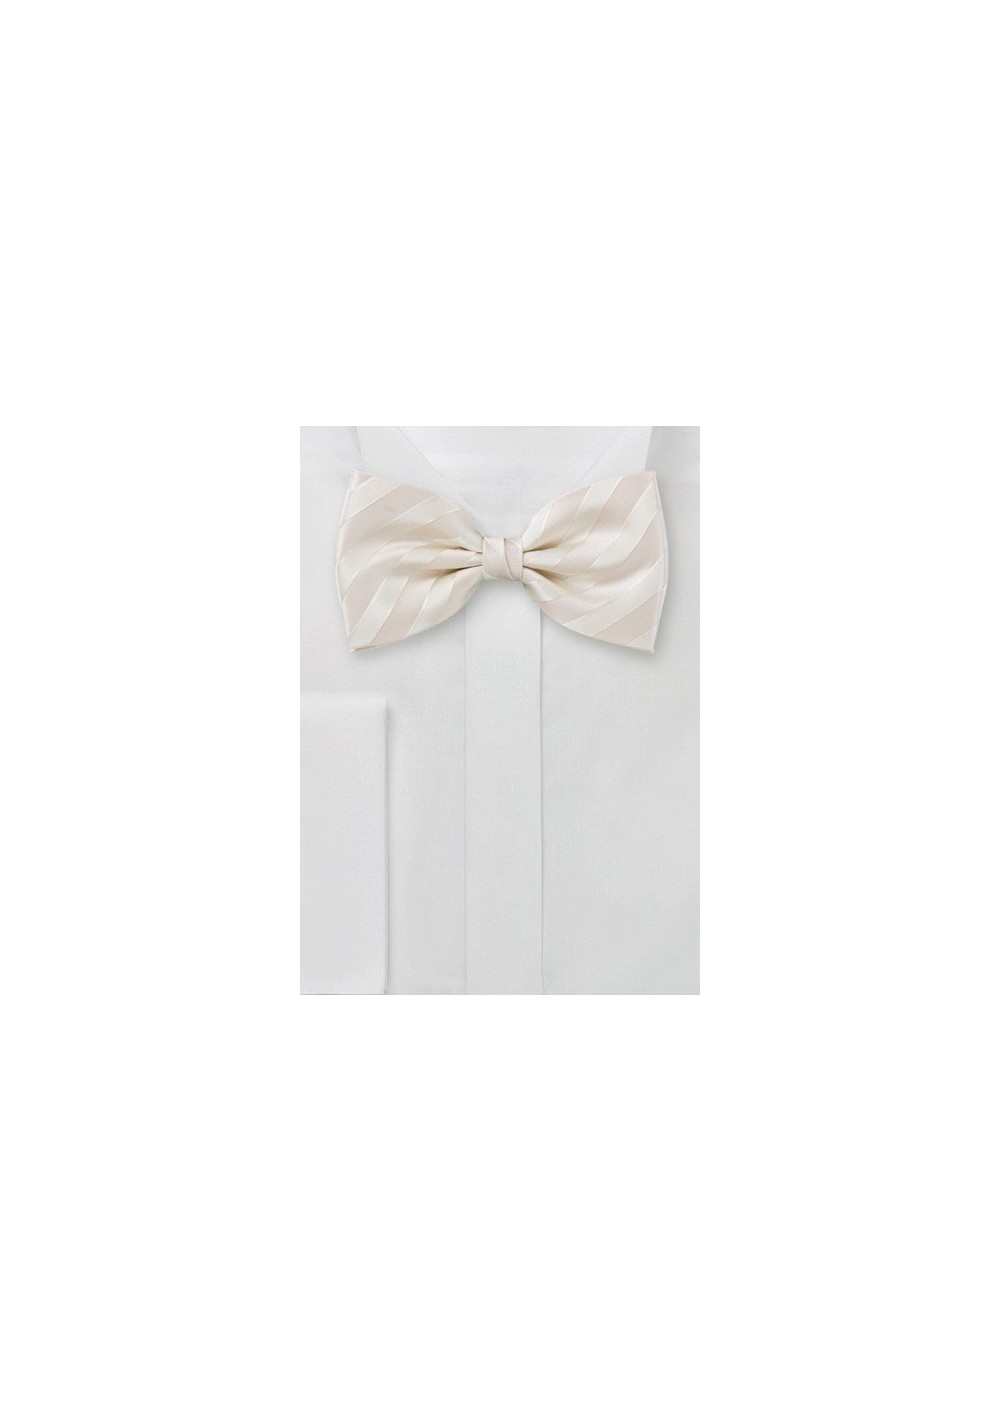 Striped Bow Tie in Cream Color